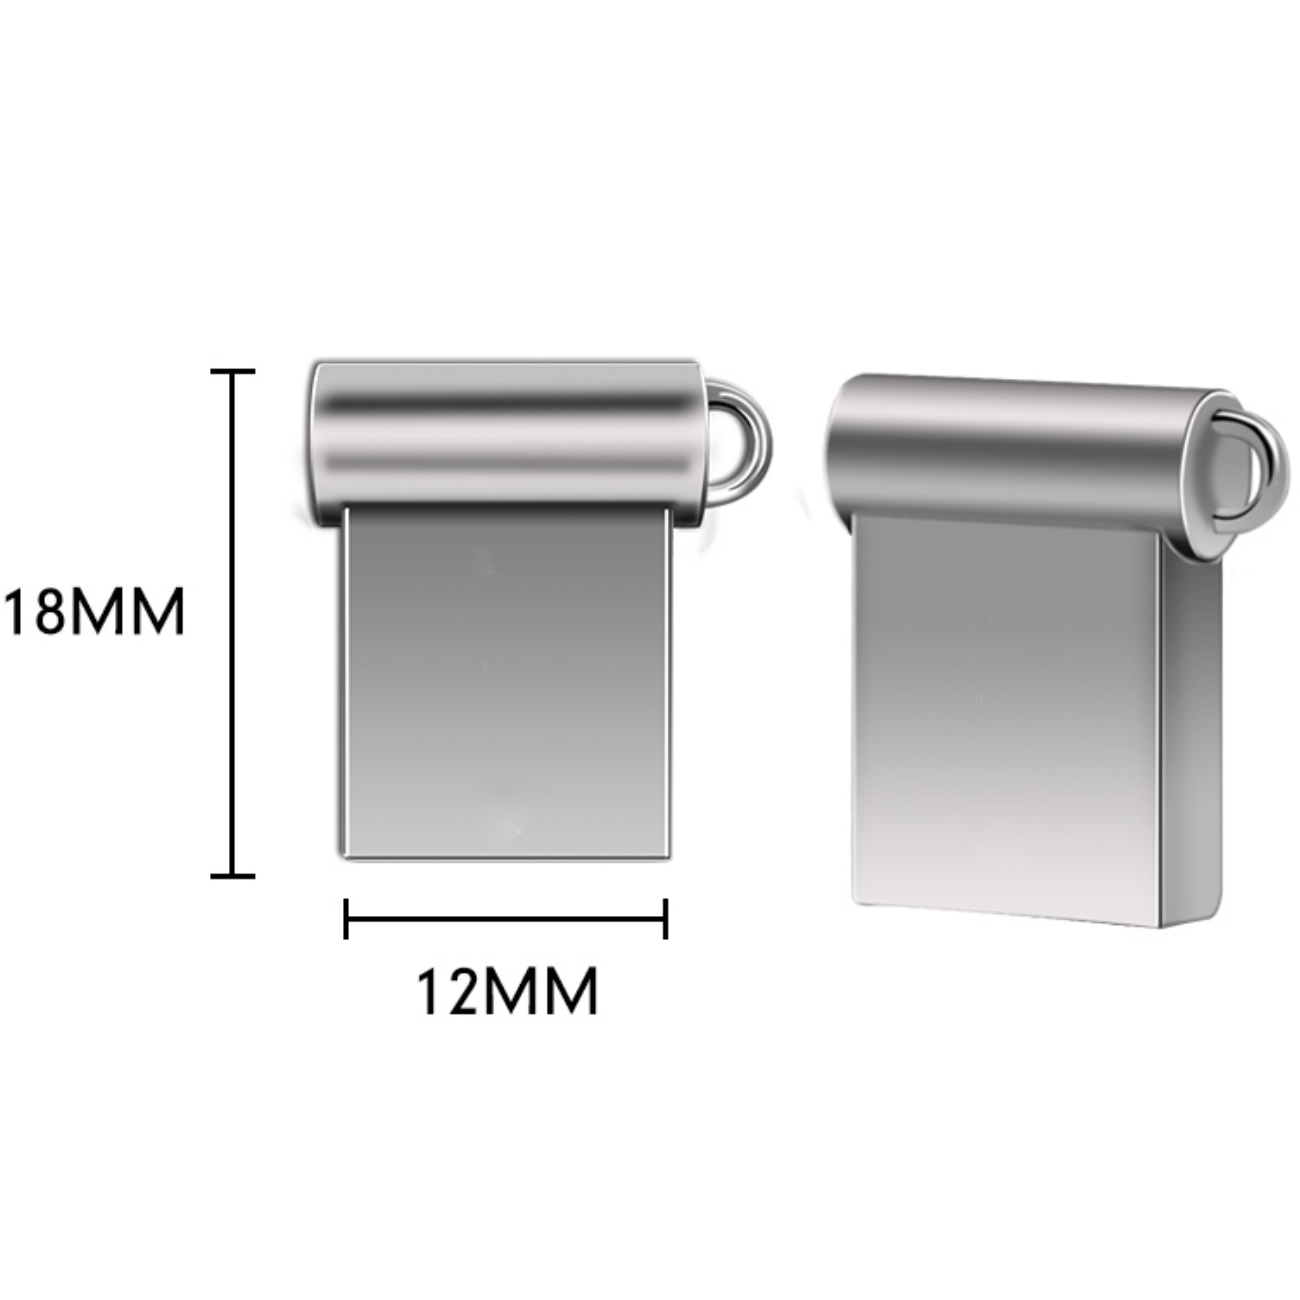 USB GERMANY ® Mini M5 (Silber, GB) USB-Stick 32